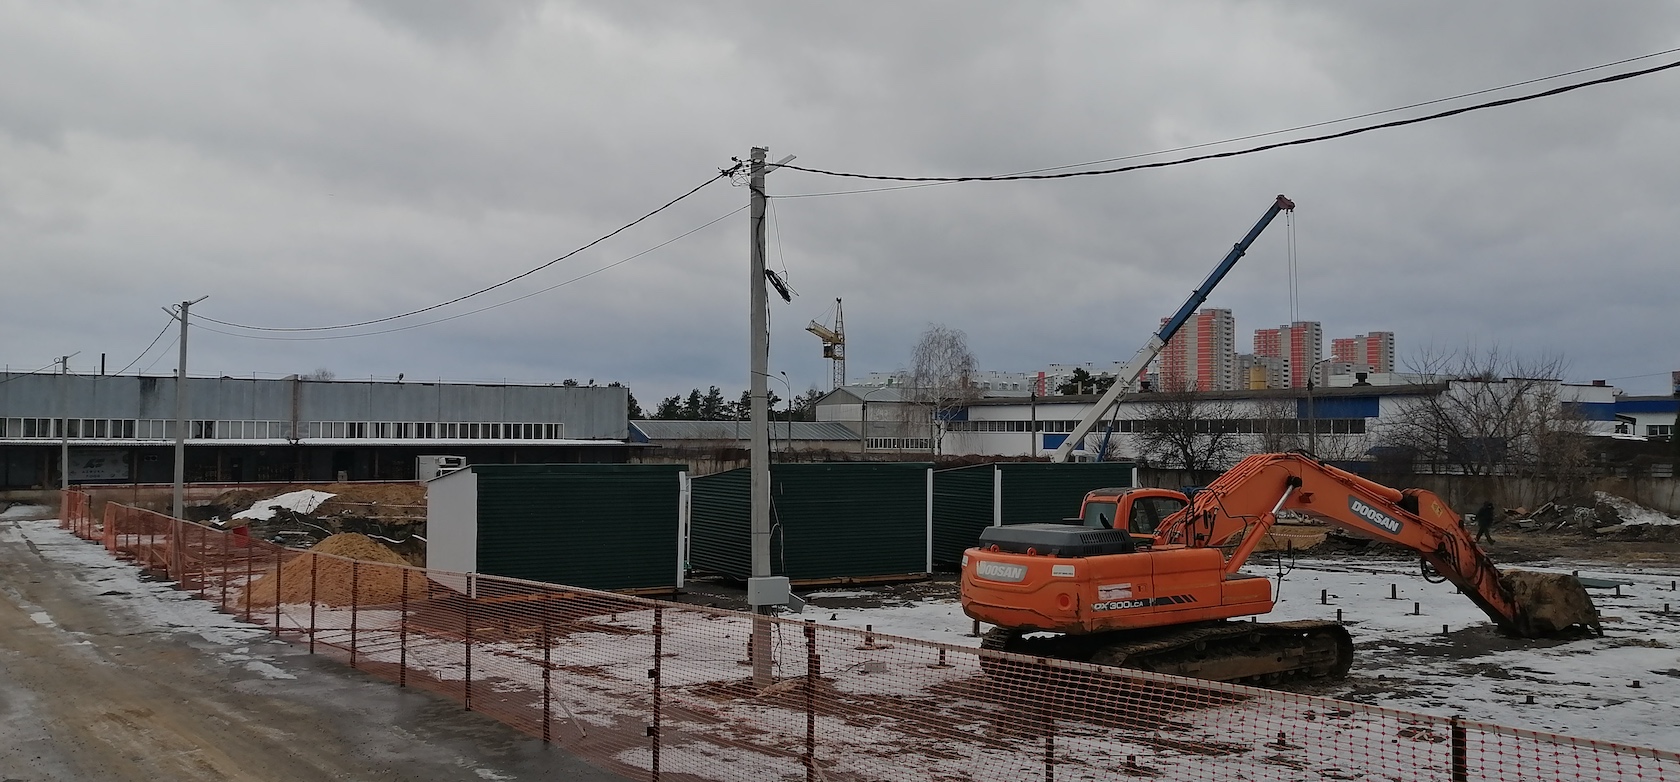 ЖК новый тракторный Волгоград ход строительства. Изменения в строительстве в 2021